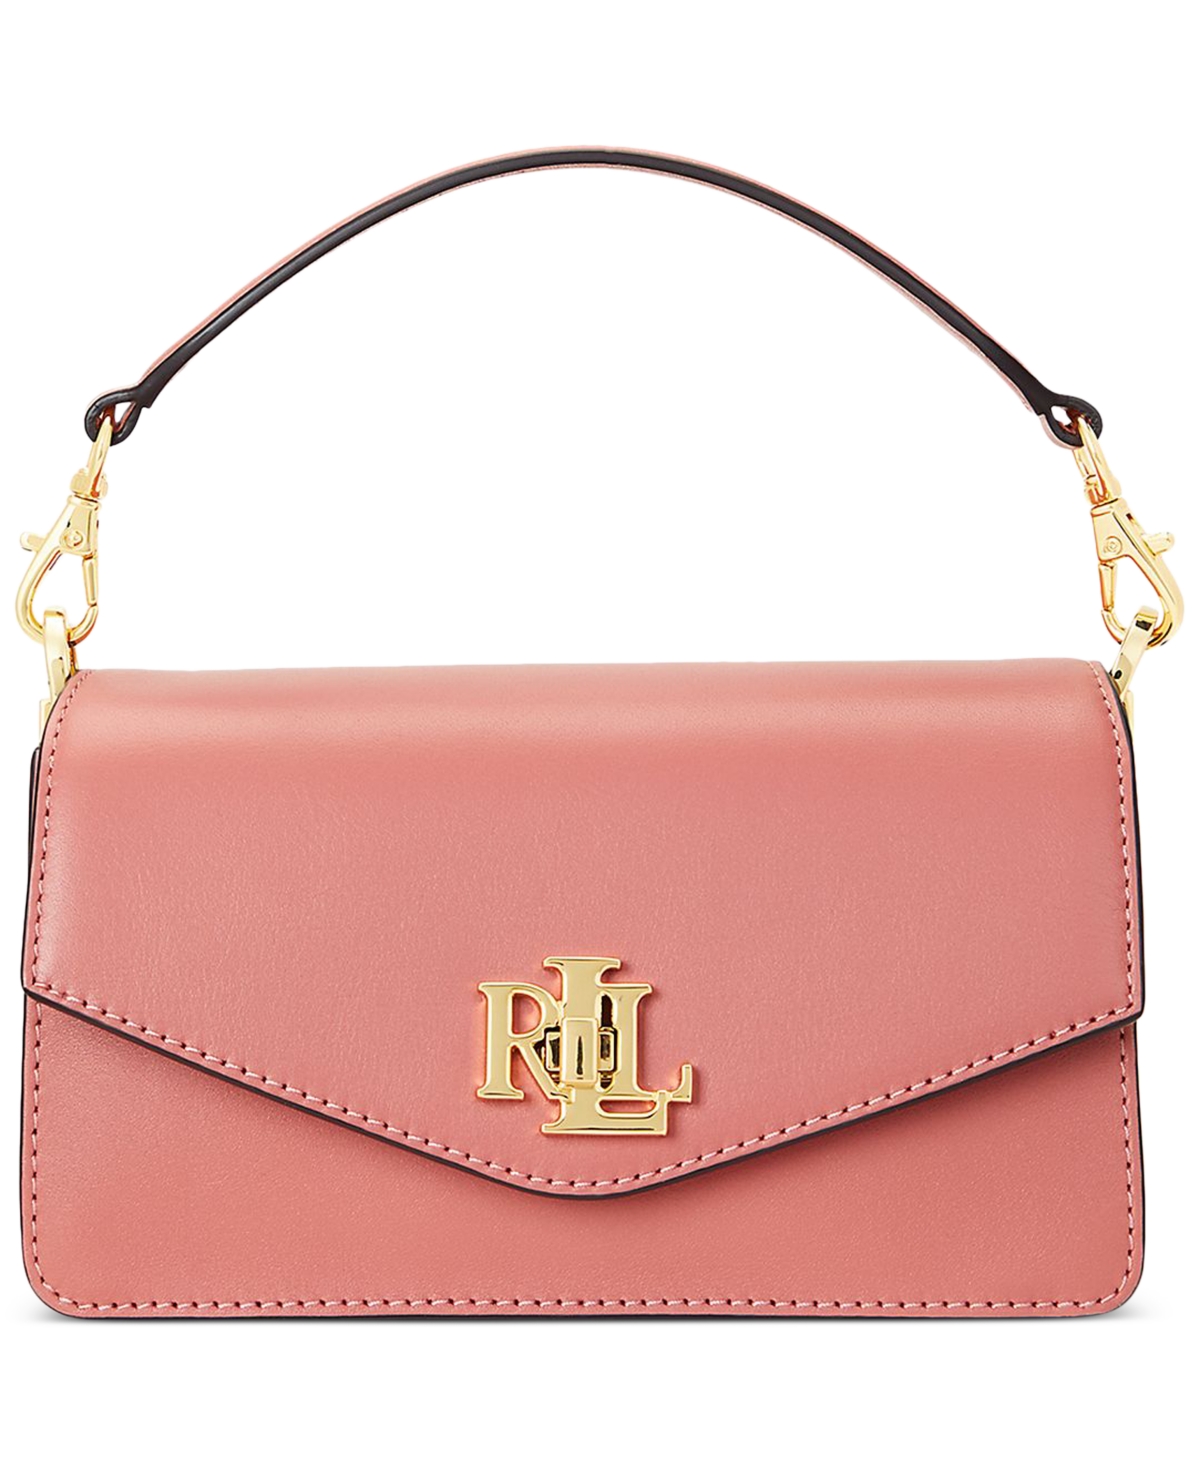 Lauren Ralph Lauren Small Leather Tayler Convertible Crossbody Bag In Pink